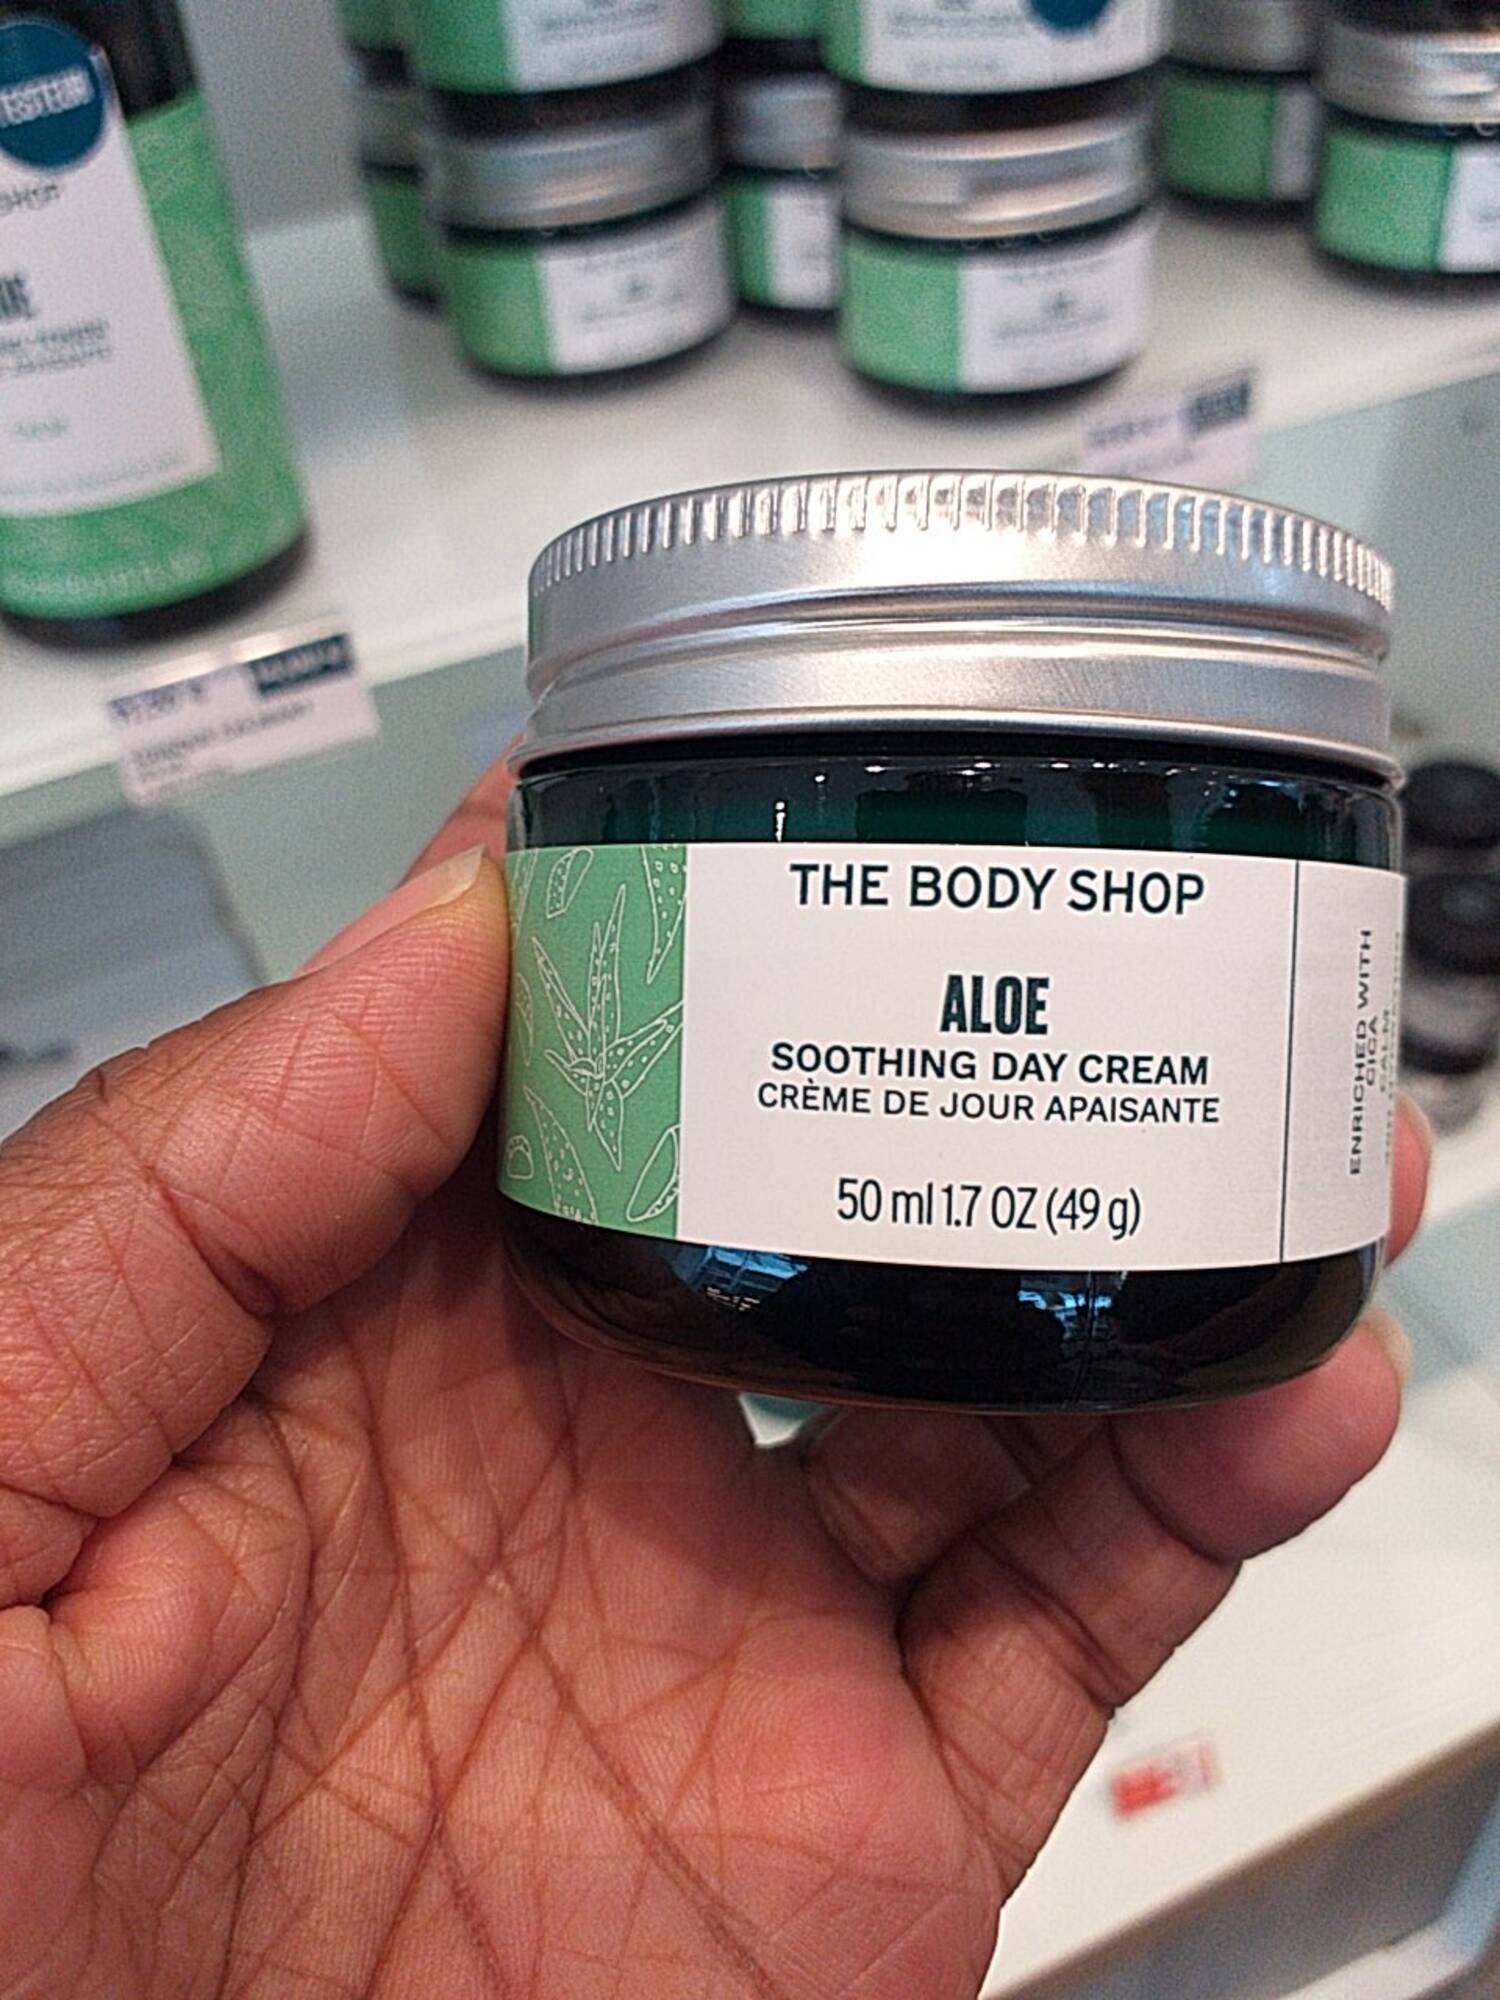 THE BODY SHOP - Aloe - Crème de jour apaisante